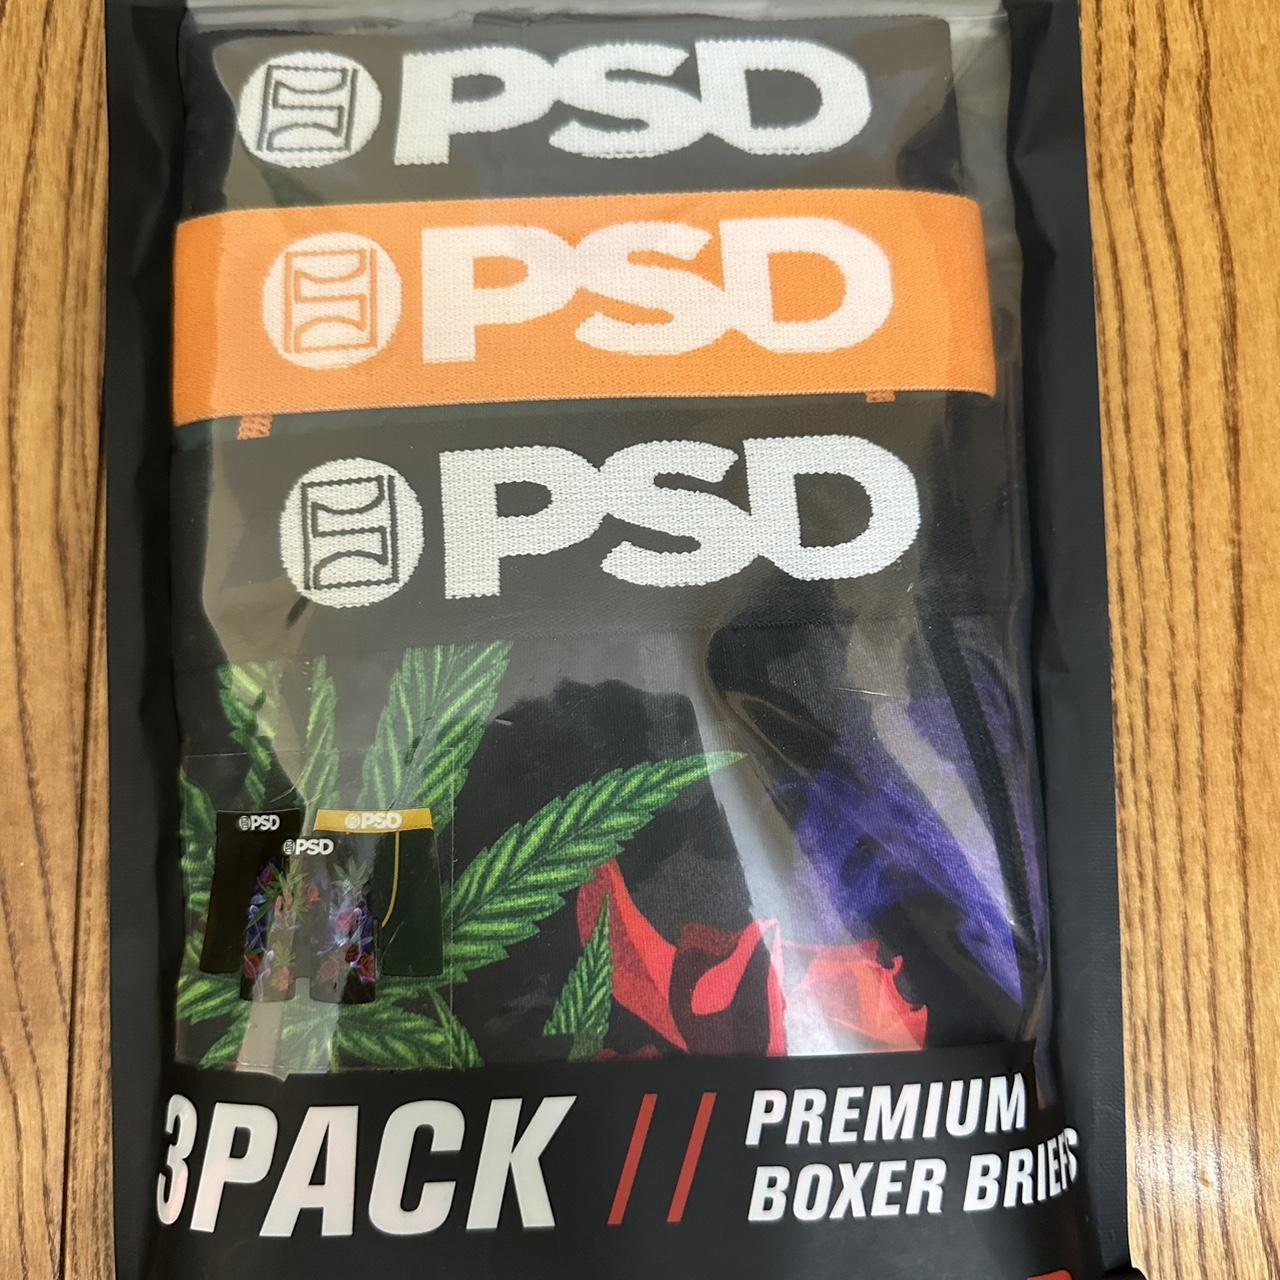 PSD Premium Boxer Briefs 3 pack core standard size - Depop